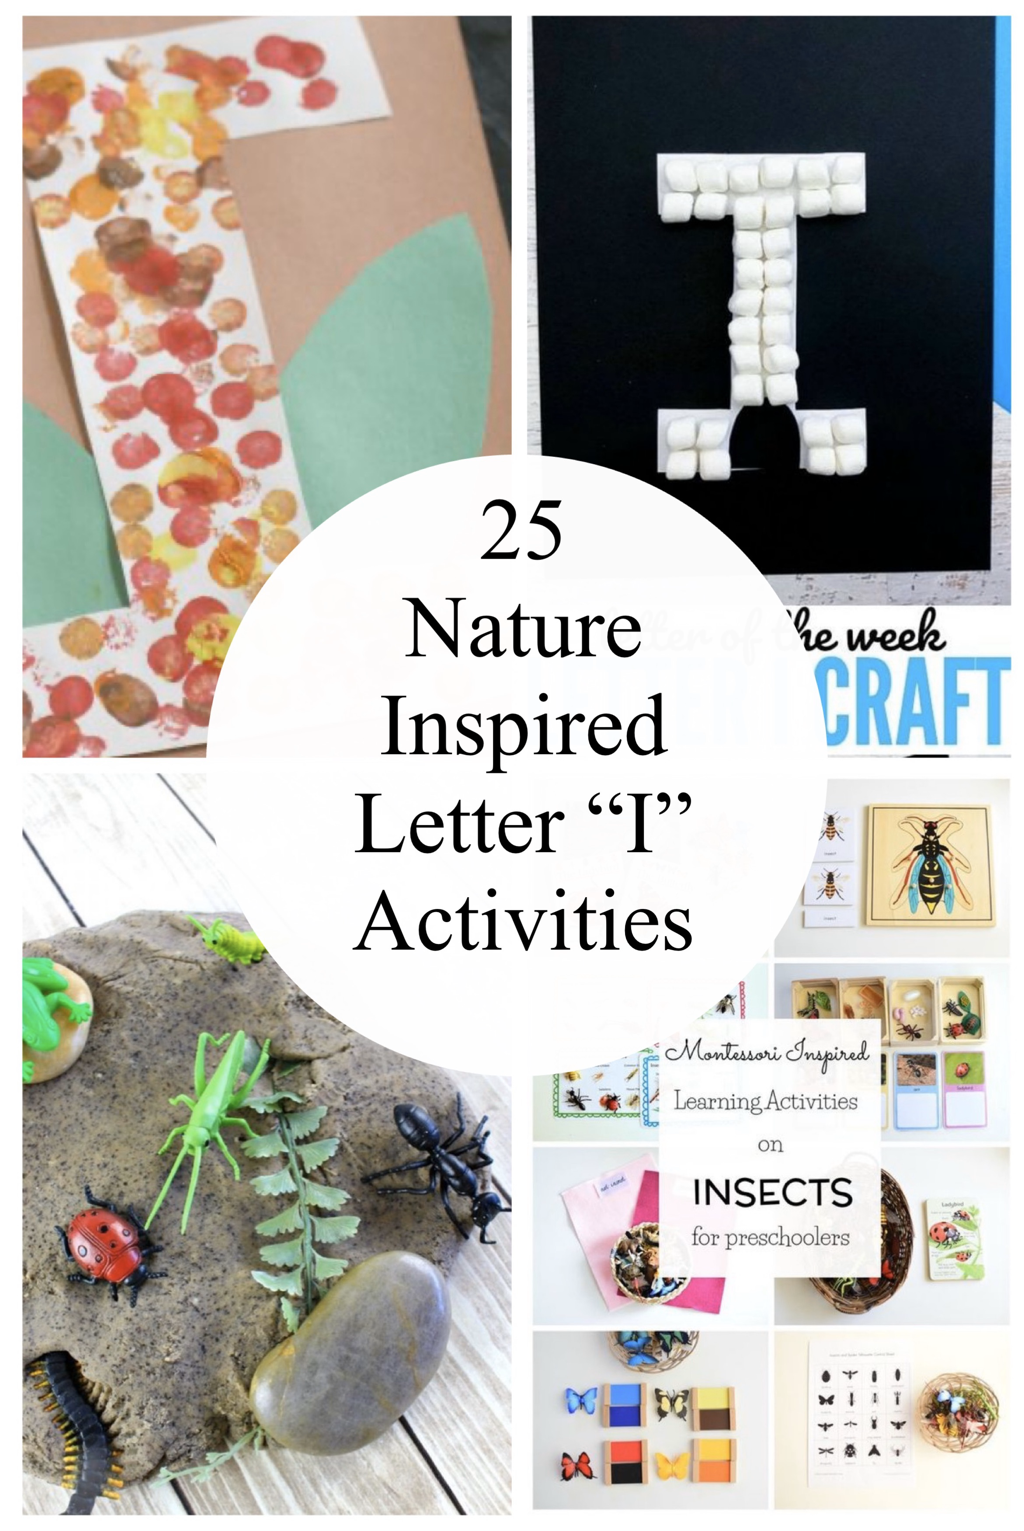 25 Nature Inspired Letter 